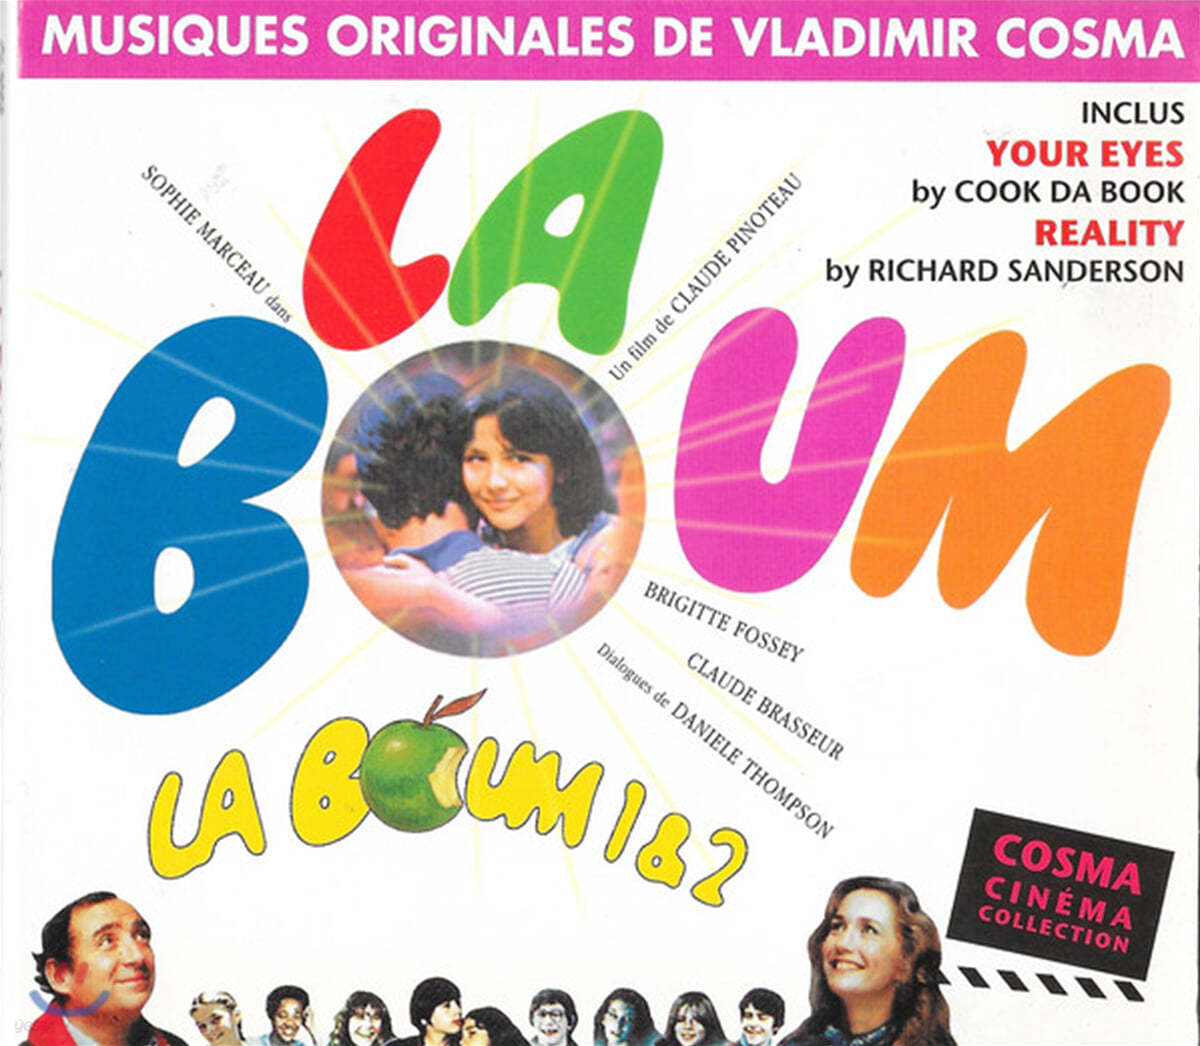 라붐 1 & 2 영화음악 (La Boum 1 & 2 OST by Vladimir Cosma)